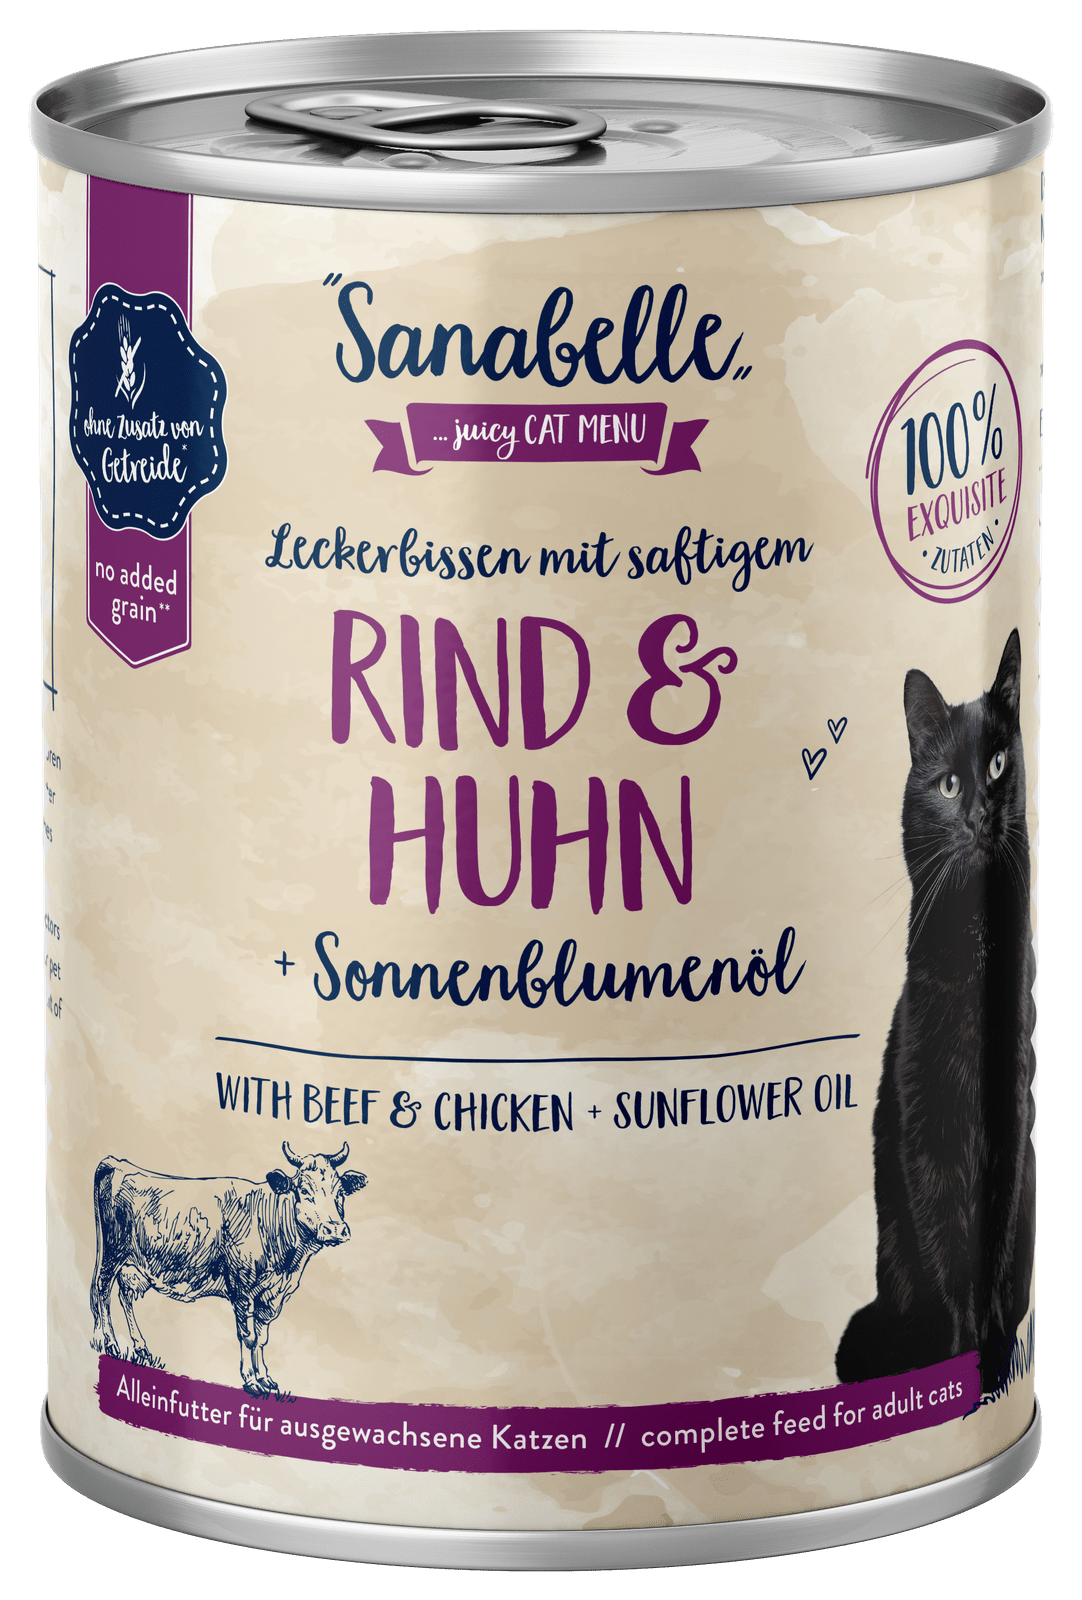 Artikel mit dem Namen Sanabelle Leckerbissen Rind & Huhn im Shop von zoo.de , dem Onlineshop für nachhaltiges Hundefutter und Katzenfutter.